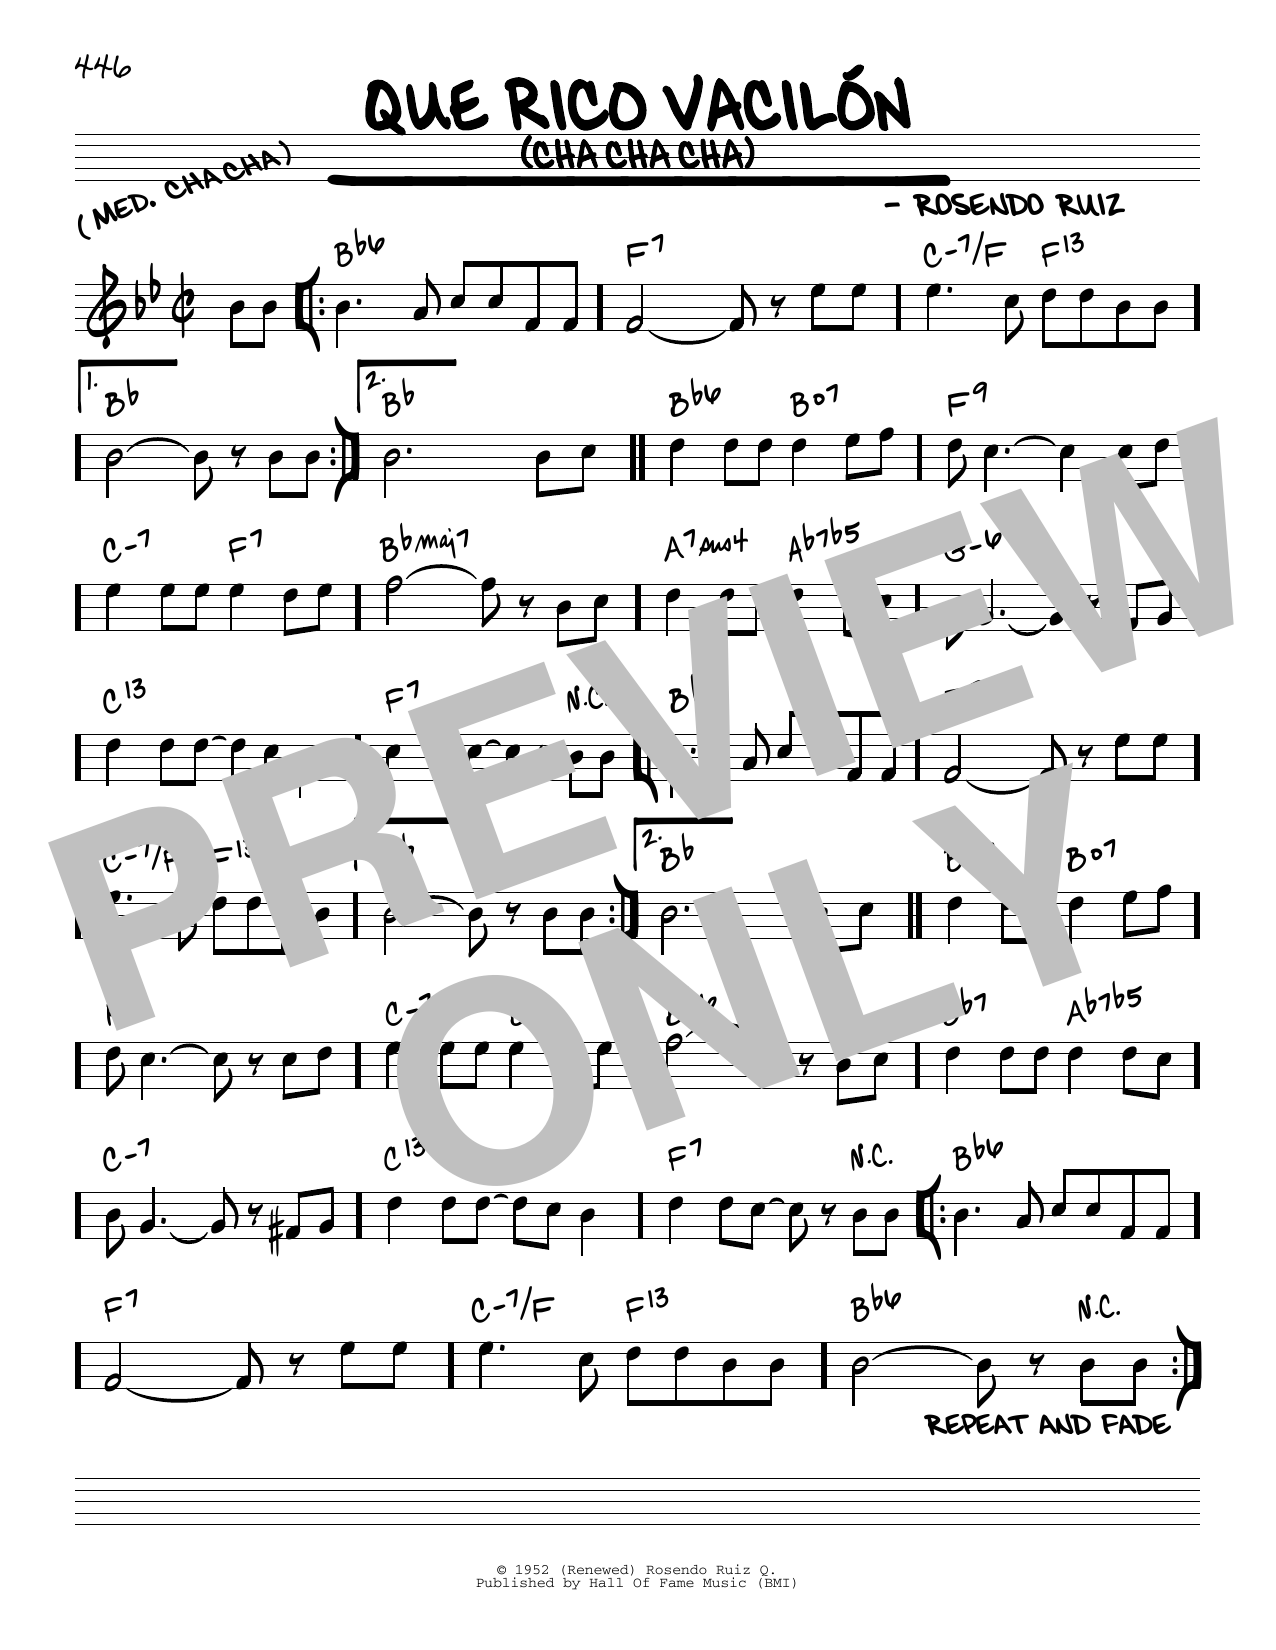 Rosendo Ruiz Que Rico Vacilon (Cha Cha Cha) Sheet Music Notes & Chords for Real Book – Melody & Chords - Download or Print PDF